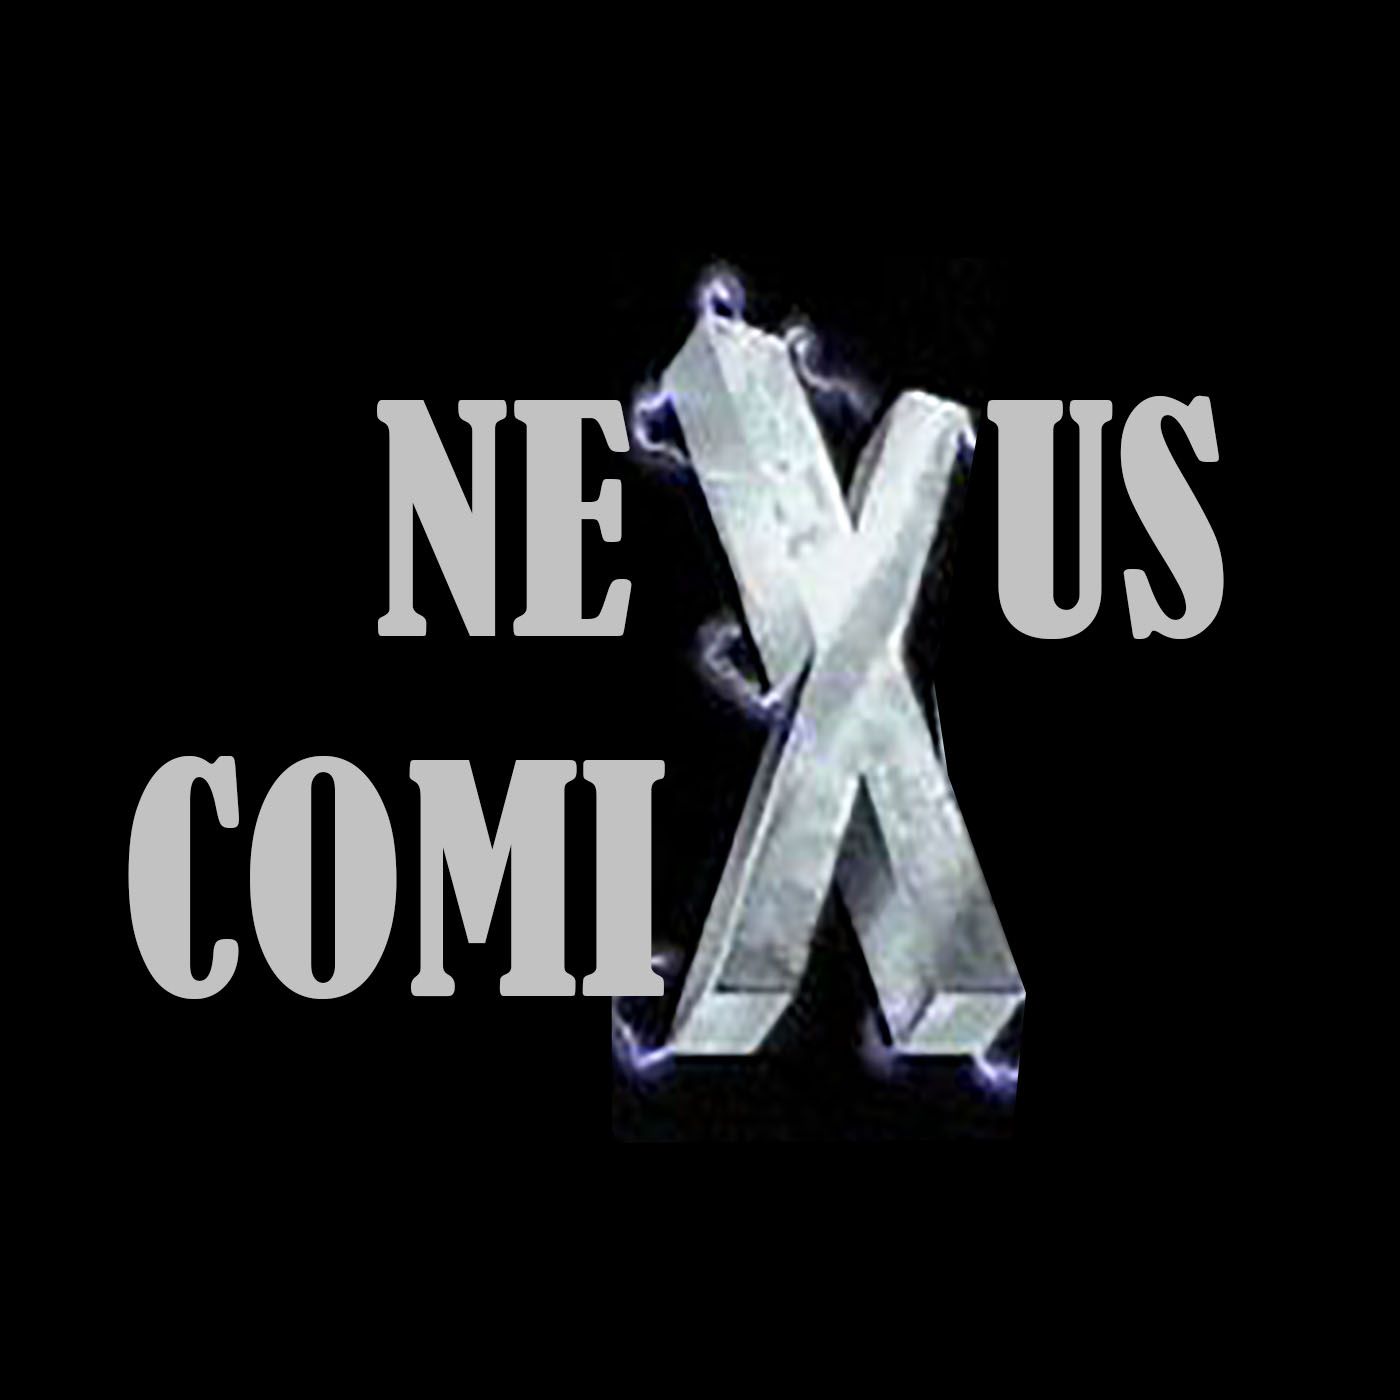 Nexus Comix